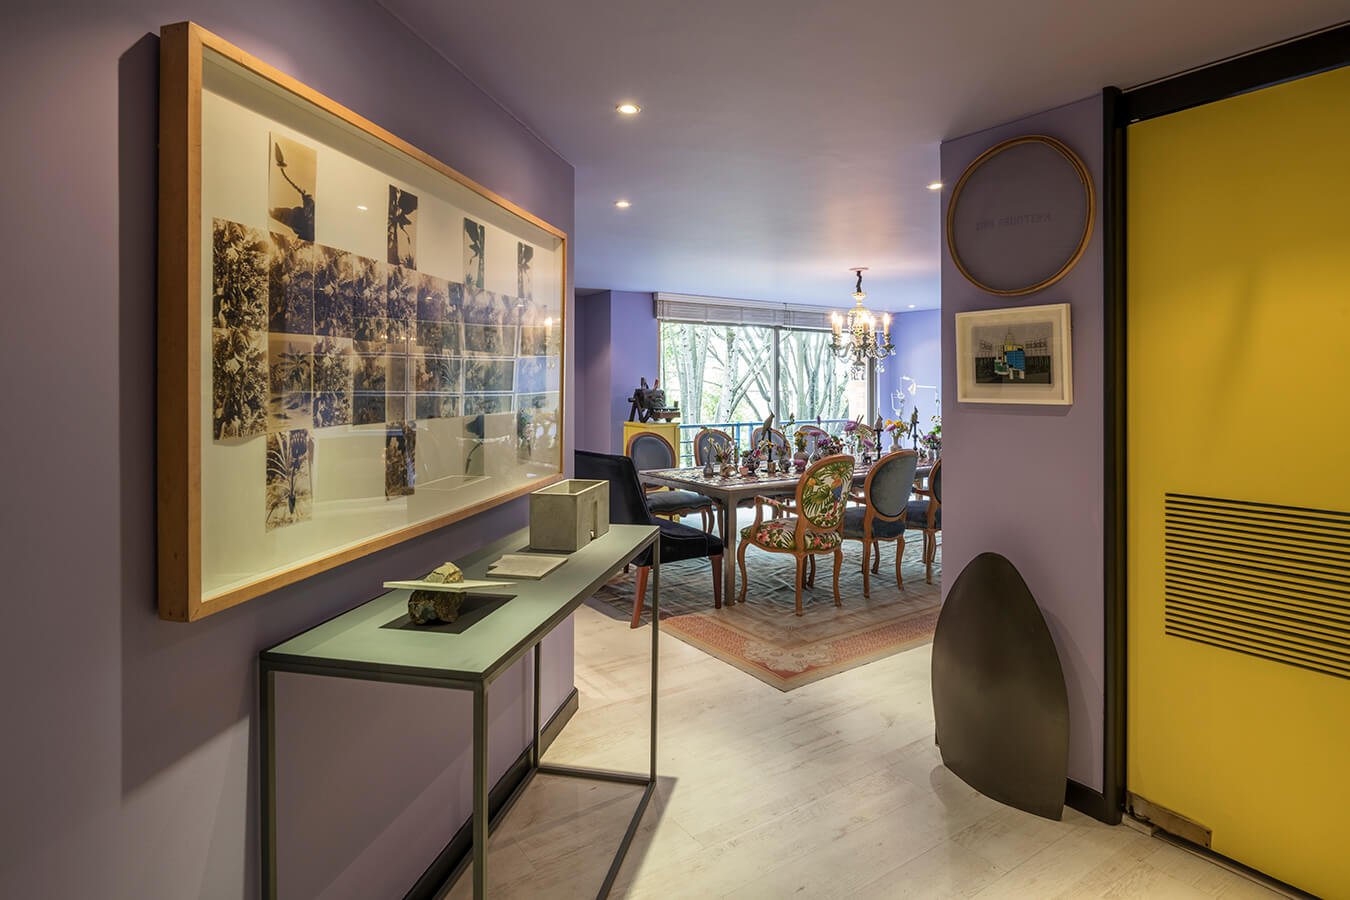 Un exclusivo apartamento bogotano que combina obras de arte contemporáneo con muebles antiguos